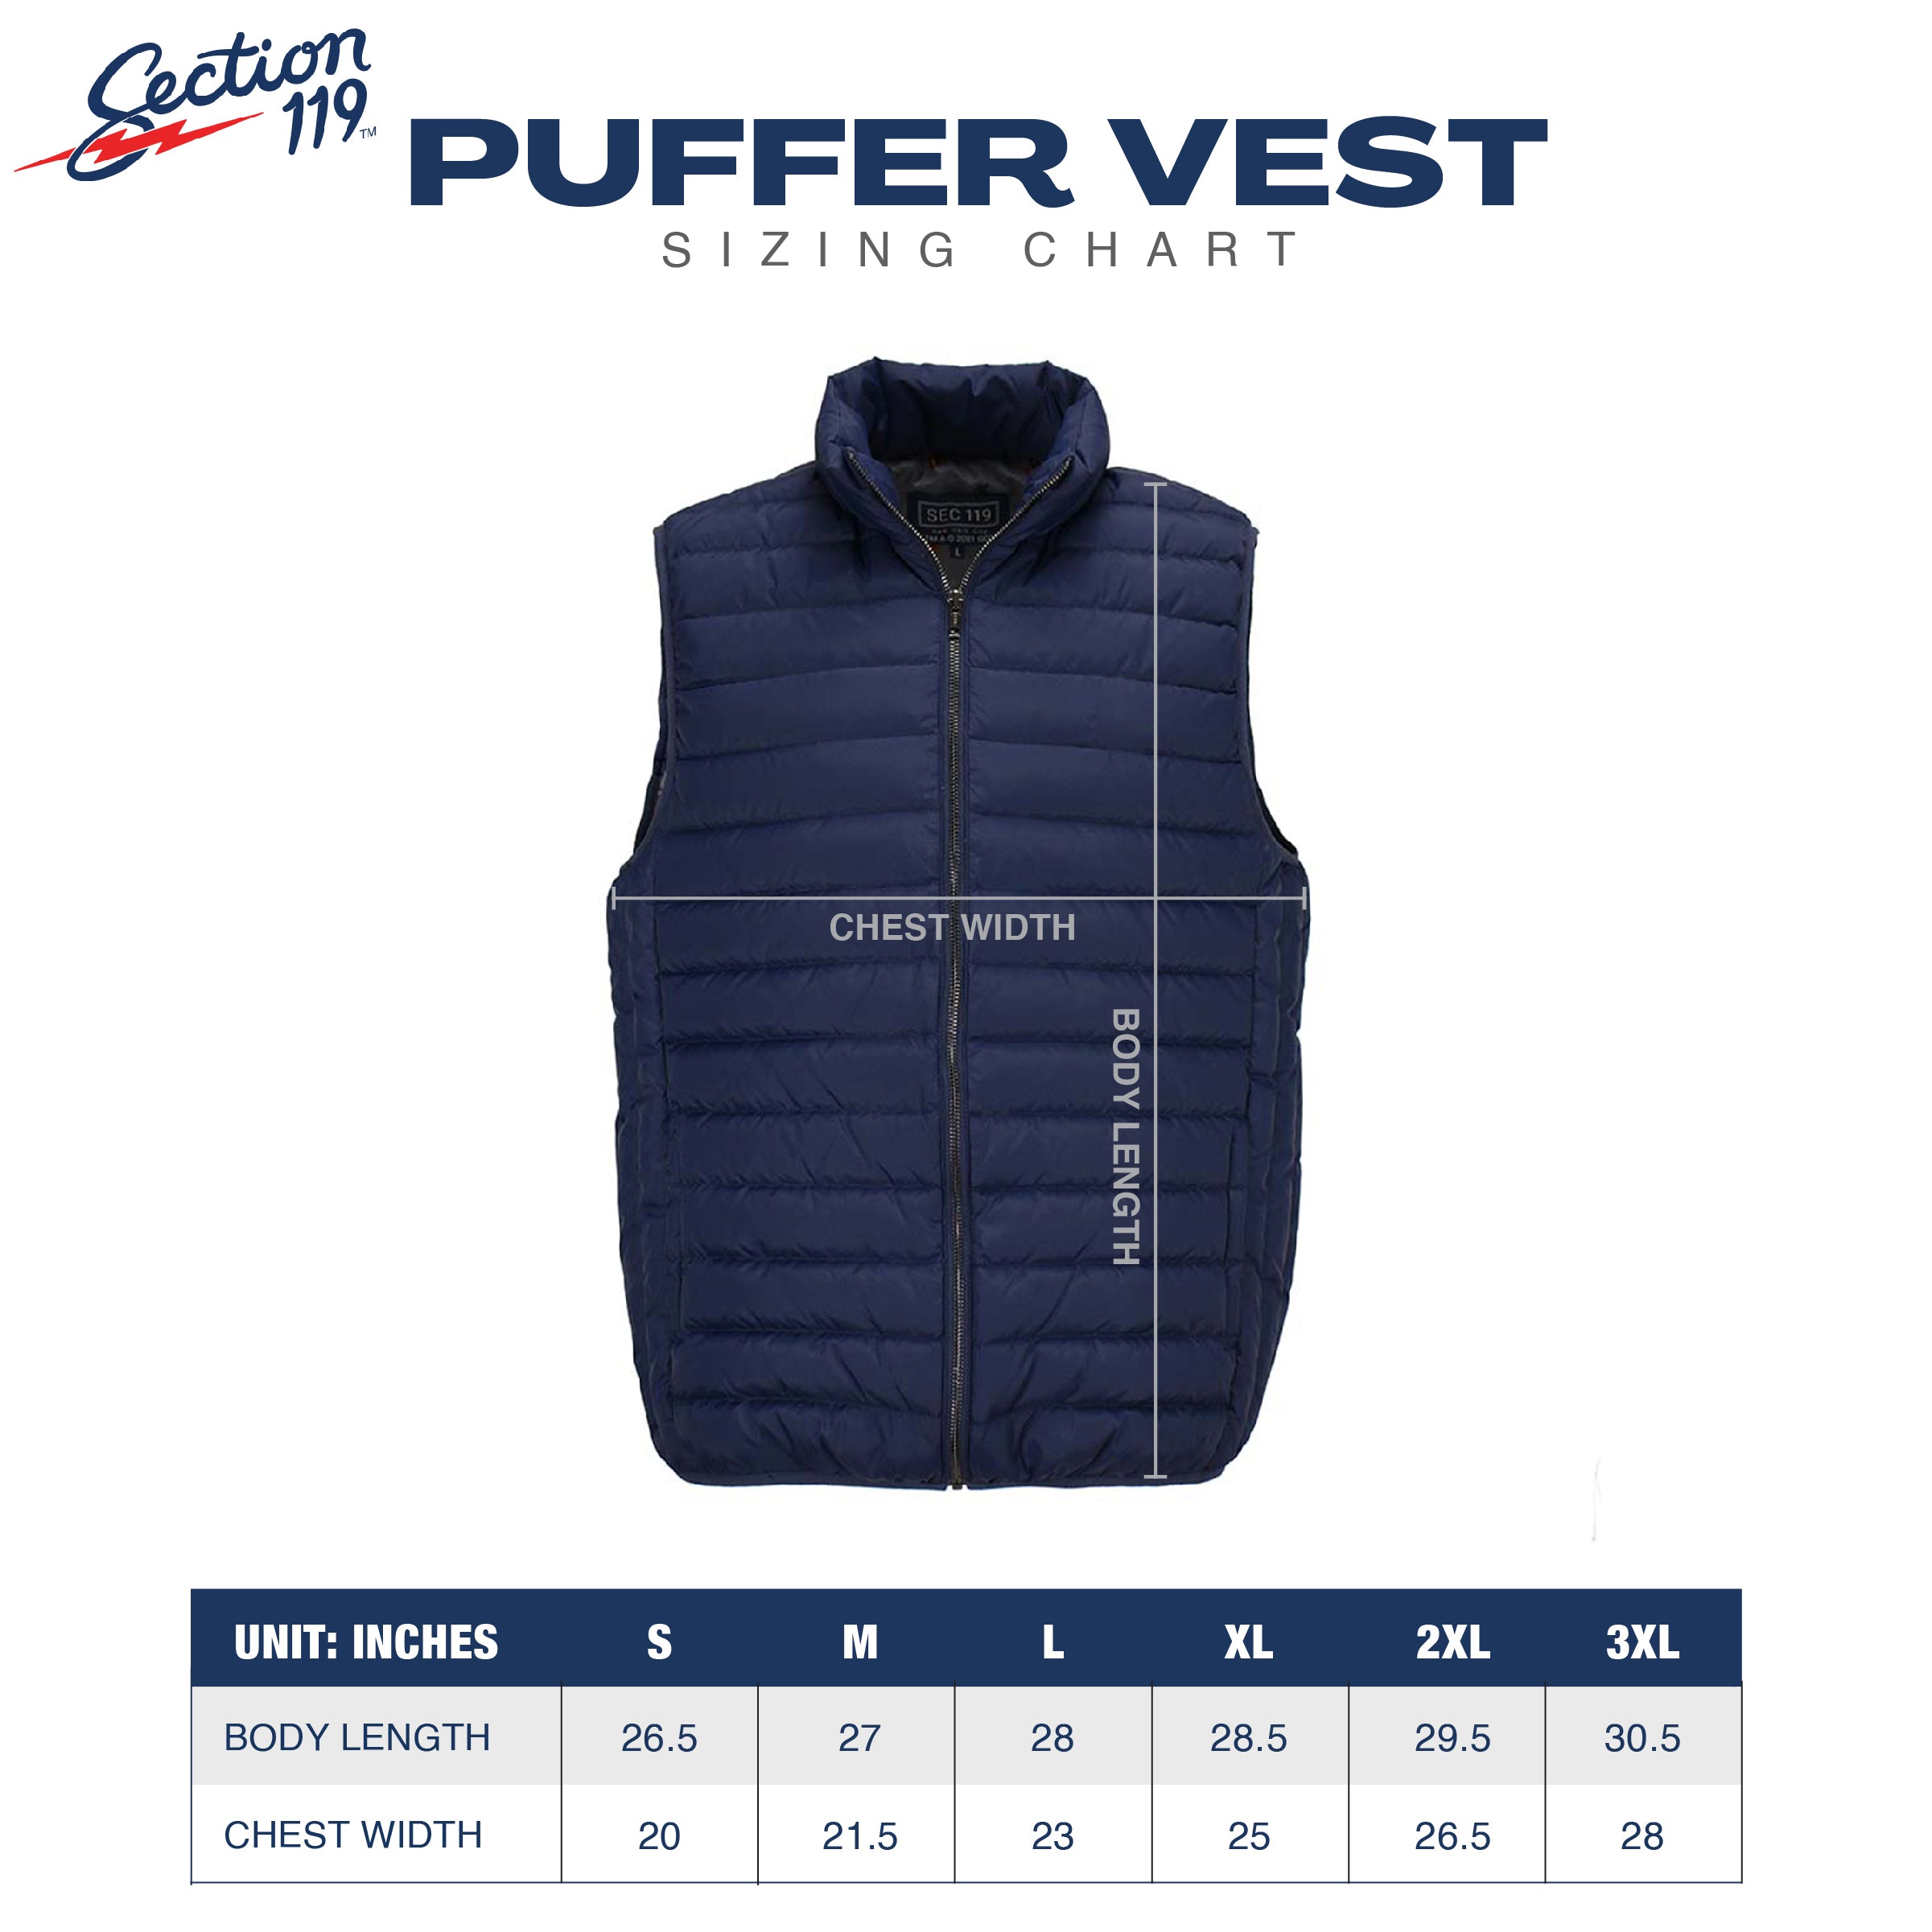 Phish Blue donut Hooded Puffer Vest in Black - Section 119